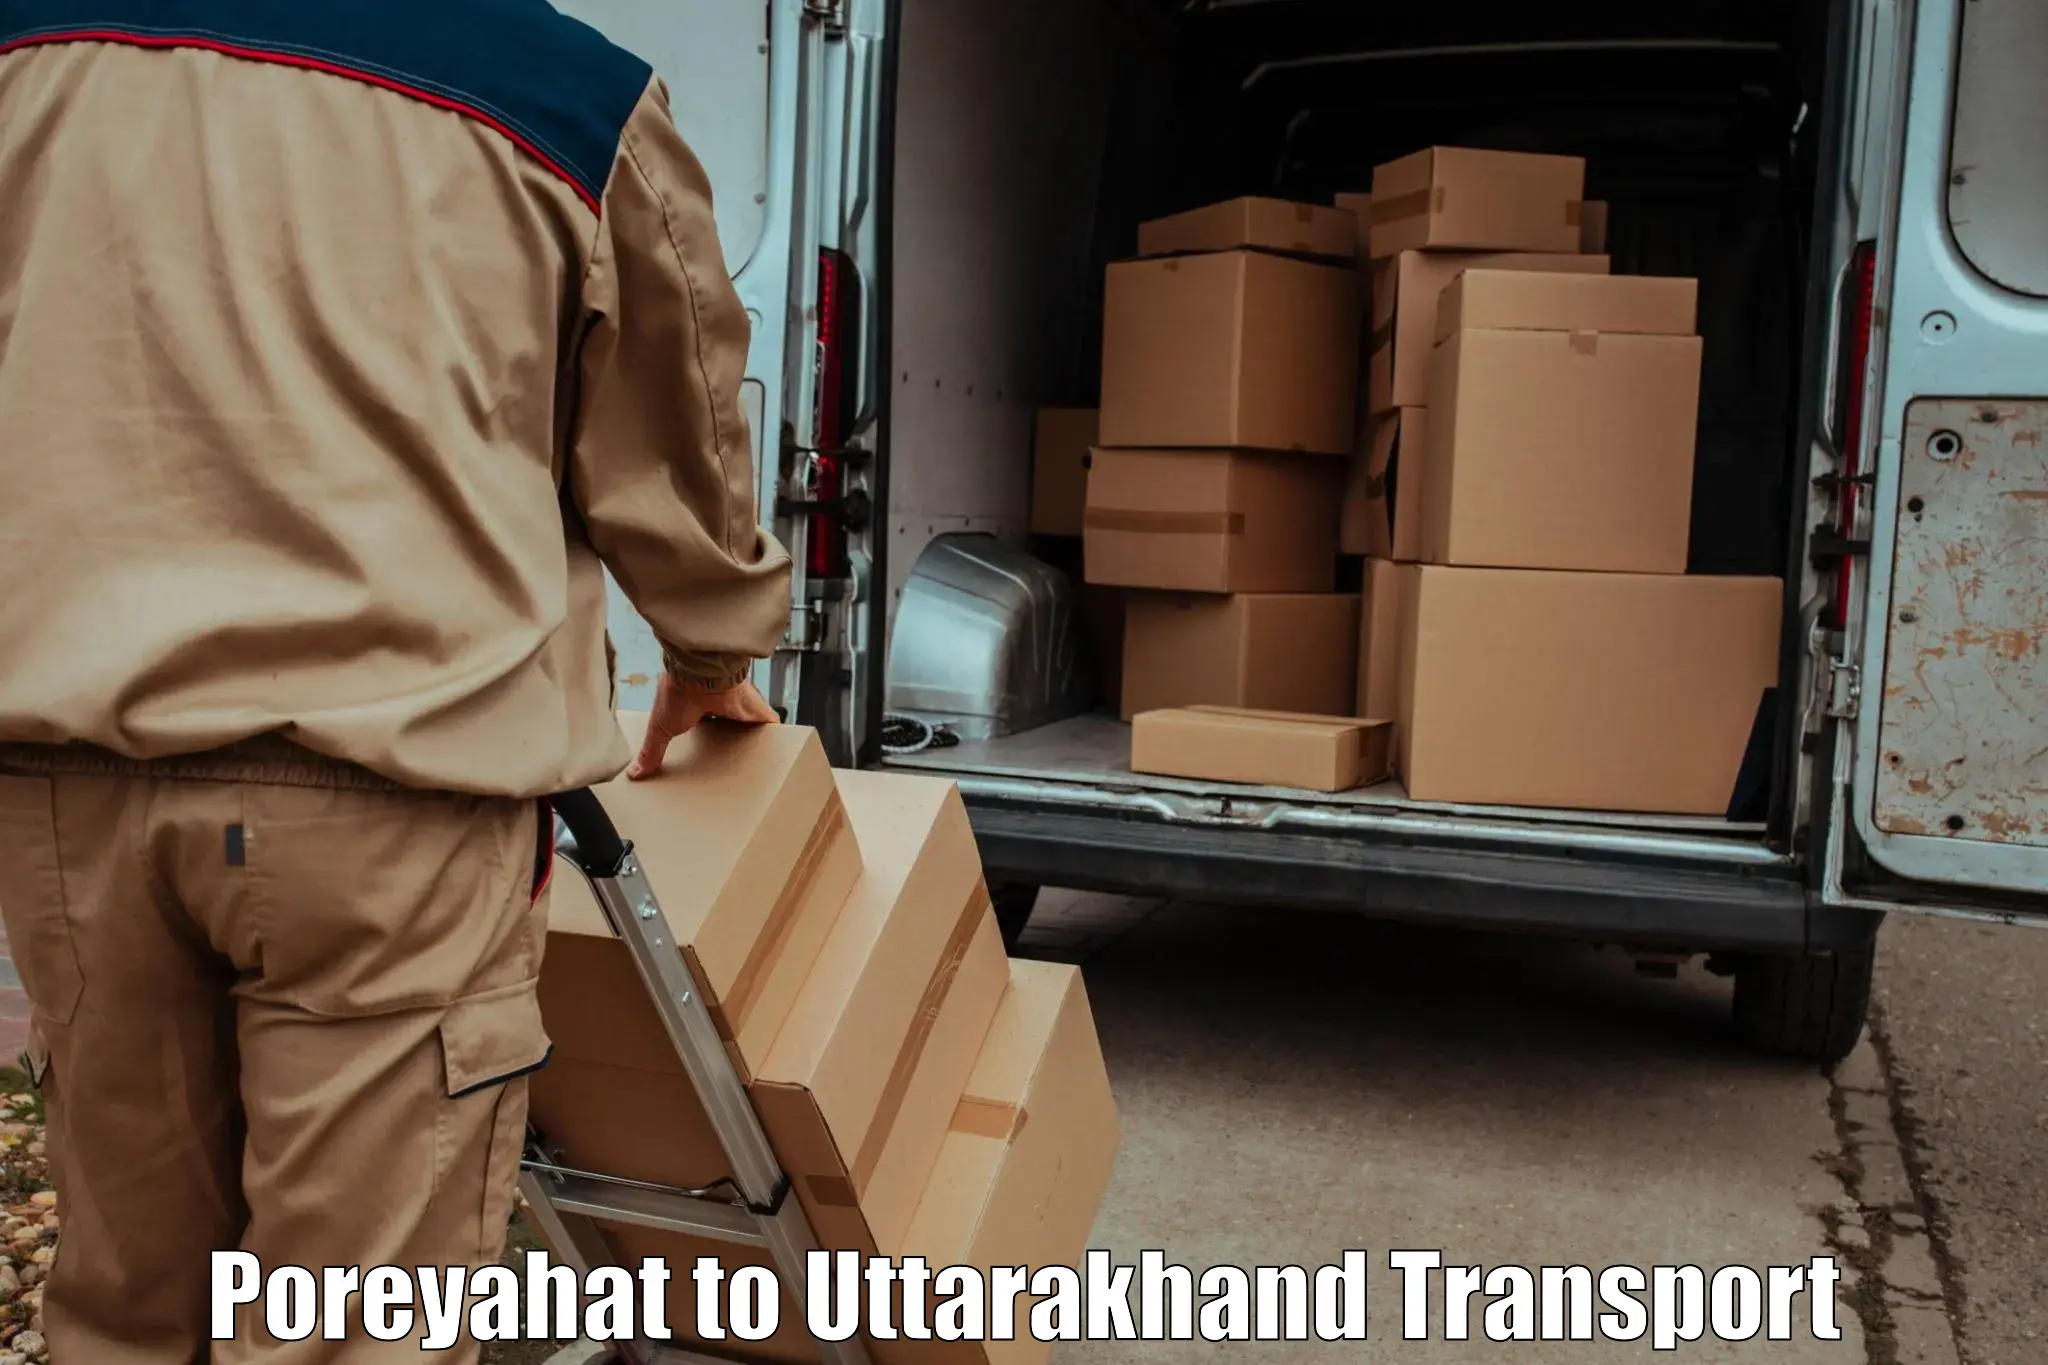 Furniture transport service Poreyahat to Dwarahat